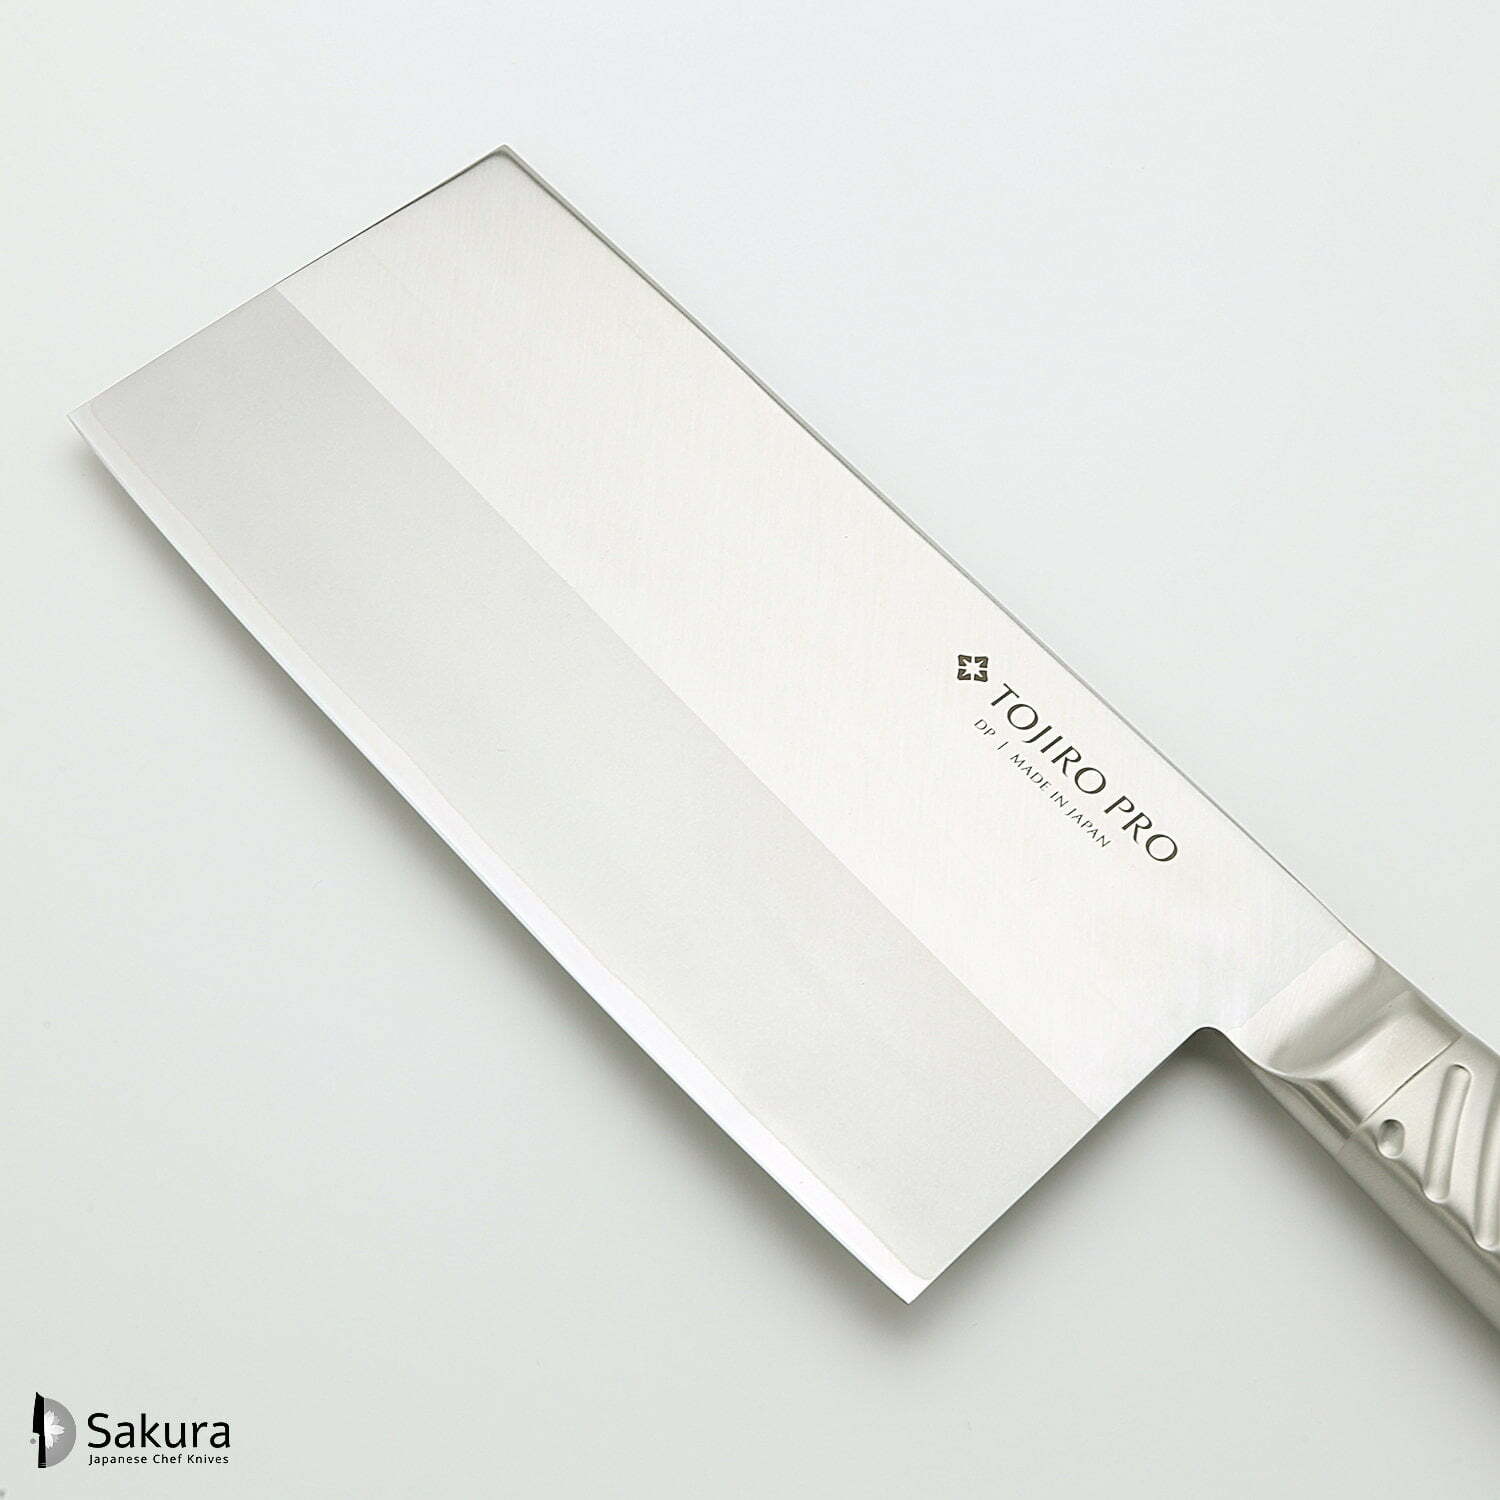 סכין שף רב-תכליתית צ’וּקָה בּוֹצ’וֹ 225מ״מ מחוזקת 3 שכבות: פלדת פחמן VG-10 עטופה בפלדת אל-חלד גימור מט מלוטש טוג׳ירו יפן